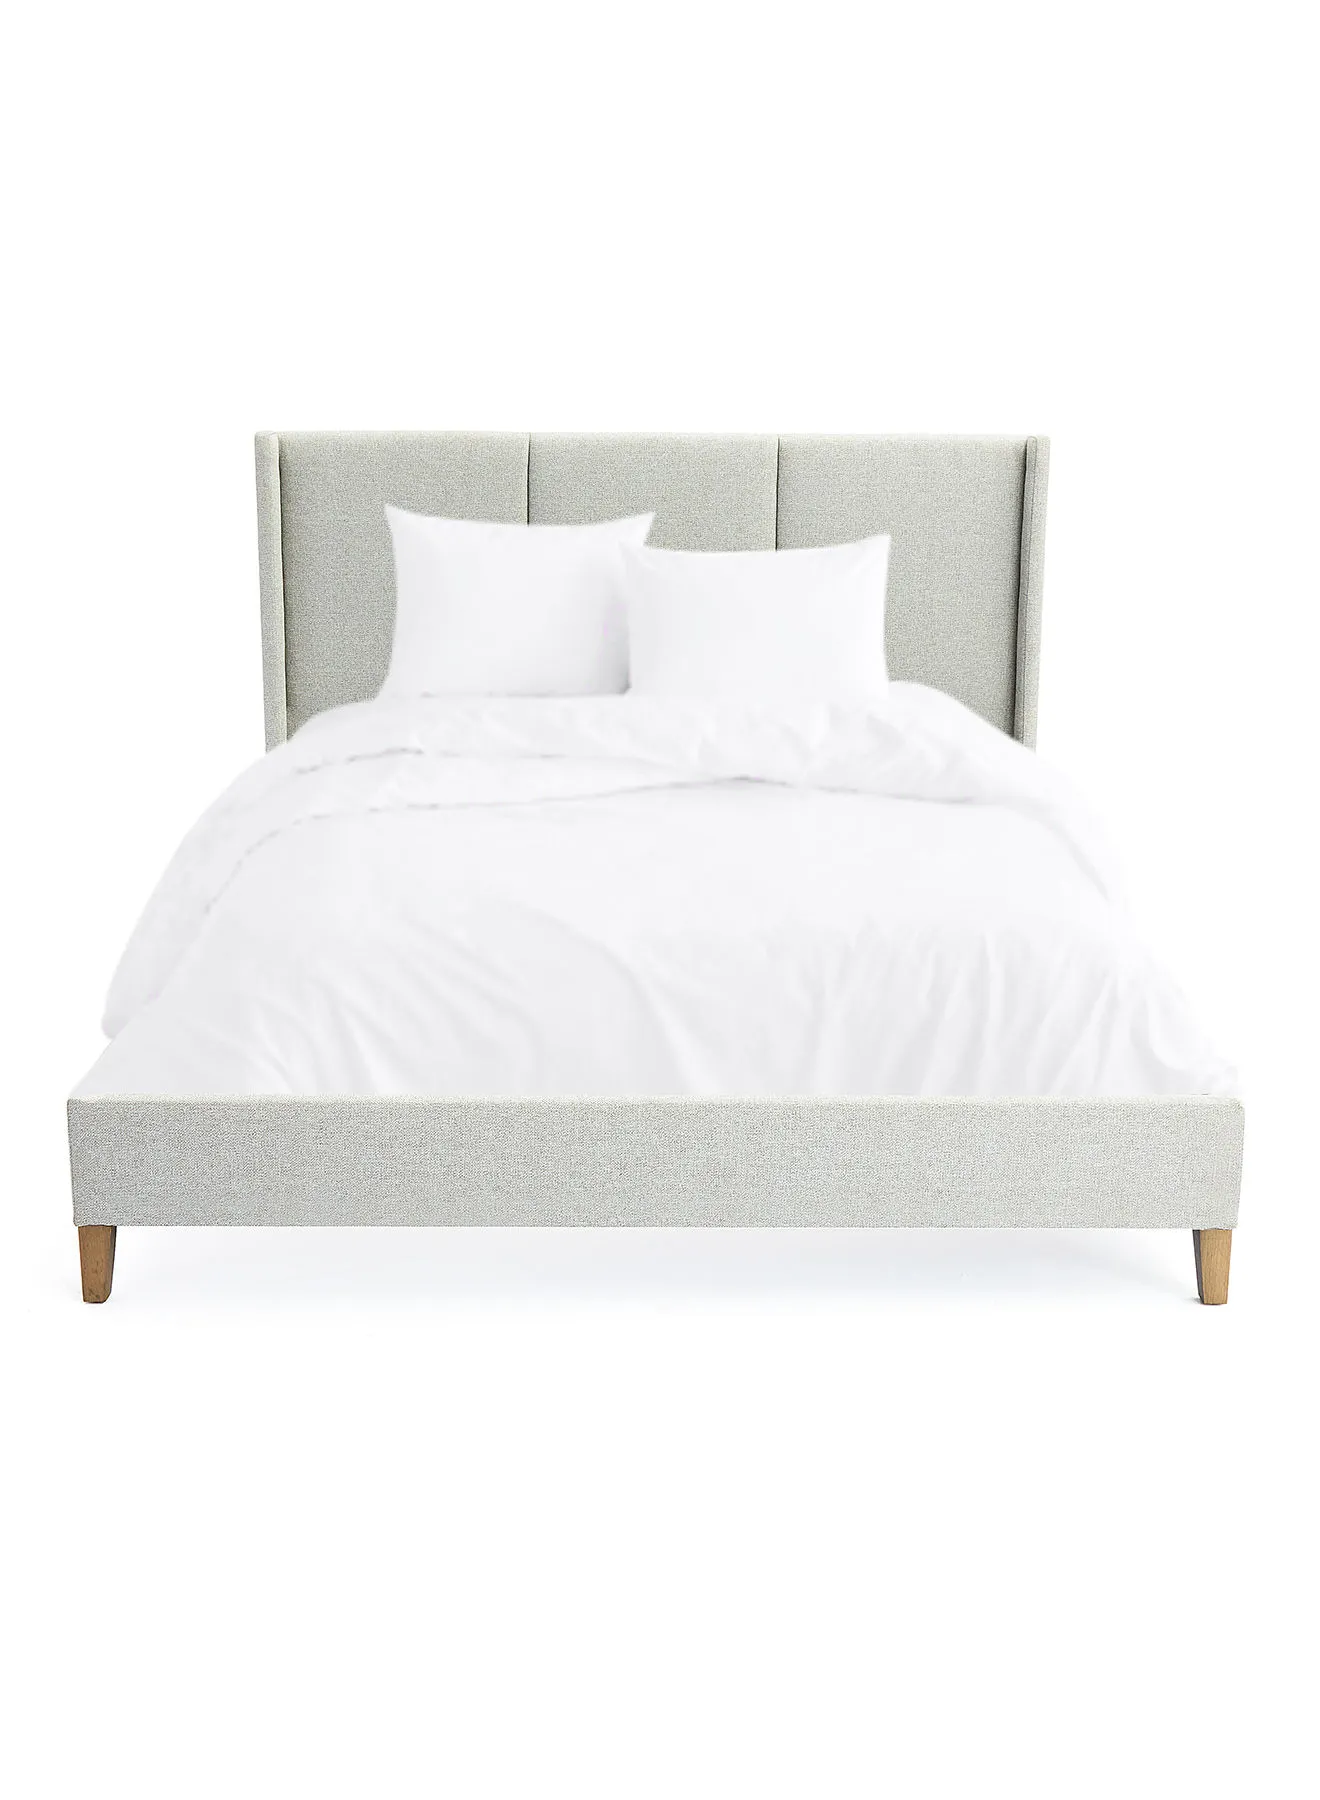 إطار سرير ebb & flow فاخر - سرير بحجم كوين - مجموعة مسمار أنيقة - لون رمادي - الحجم 1660 × 2080 × 1100 - منزل فاخر